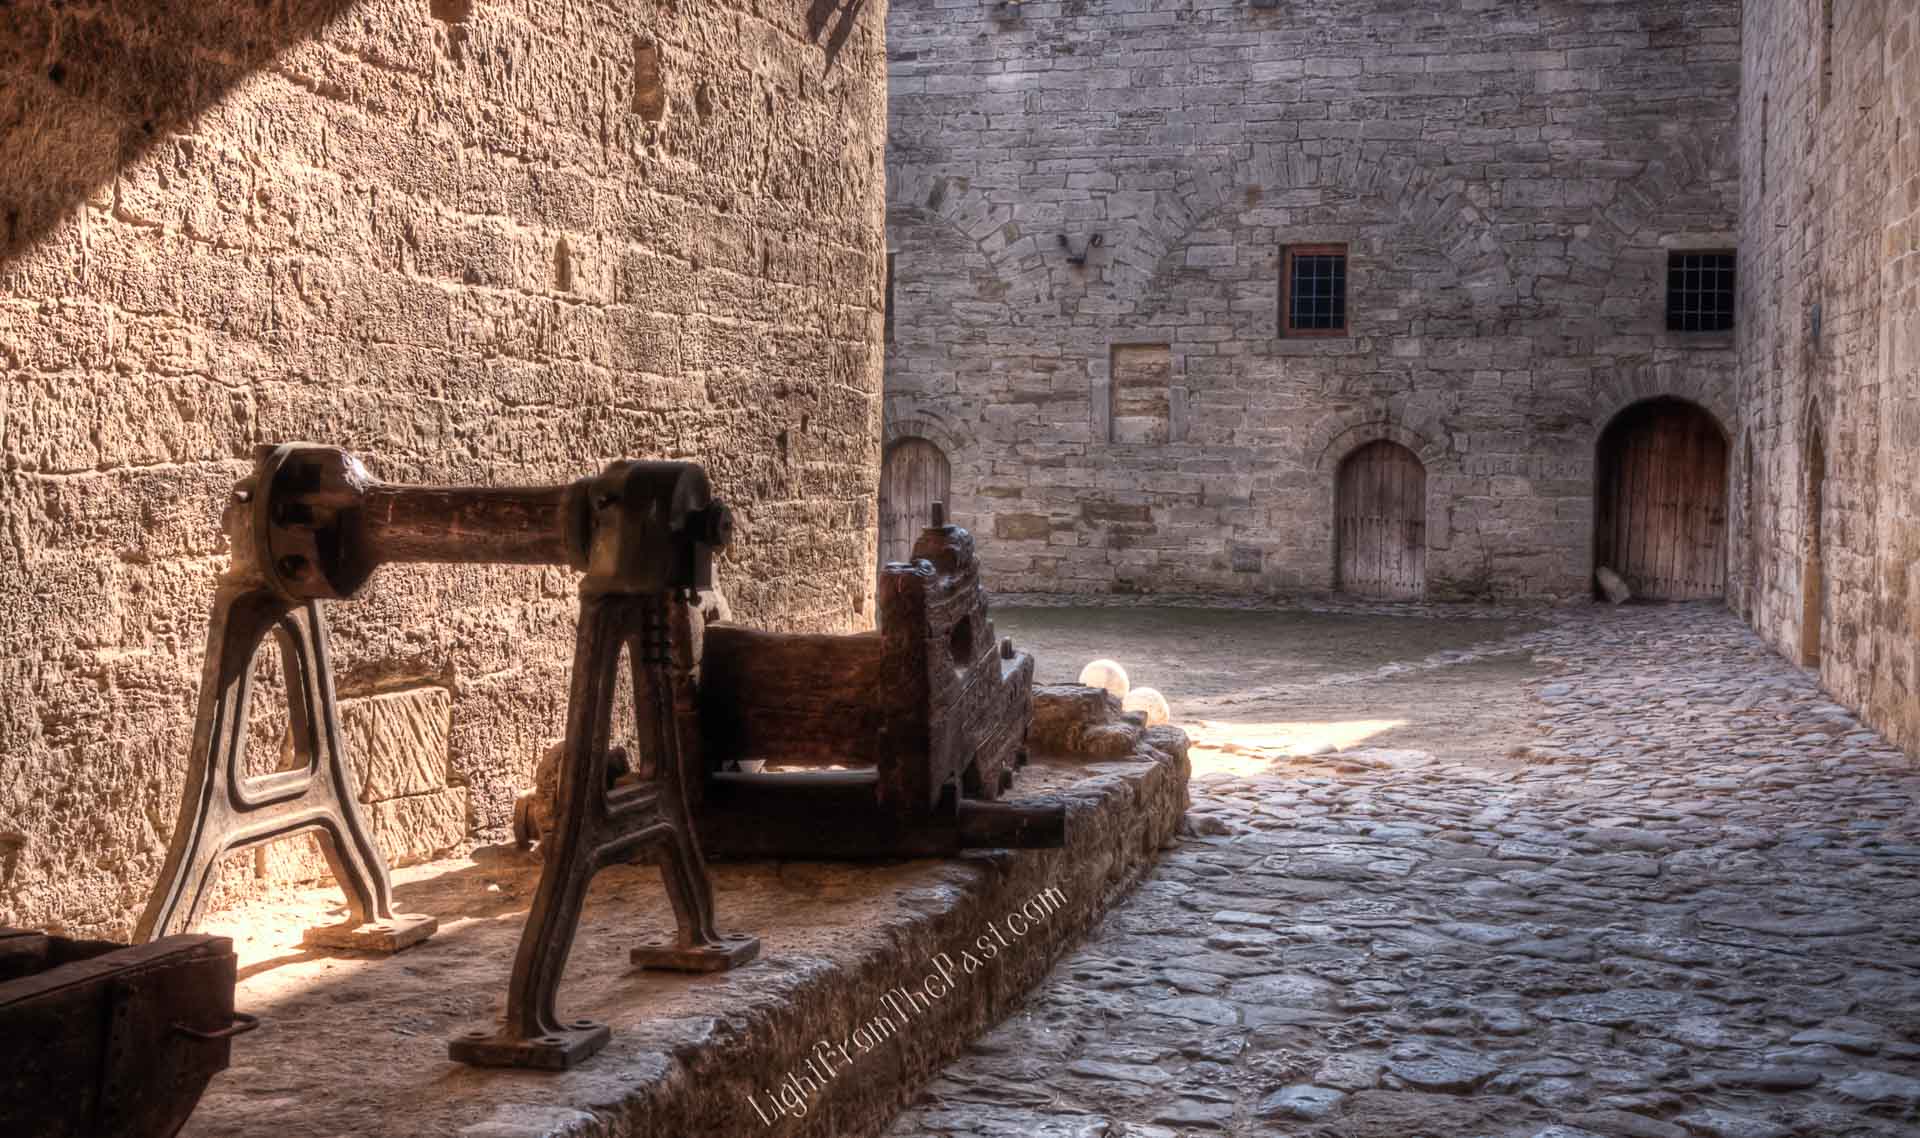  Останки от катапулт (стенобойна машина), използвана при заснемане на игрален филм в крепостта.